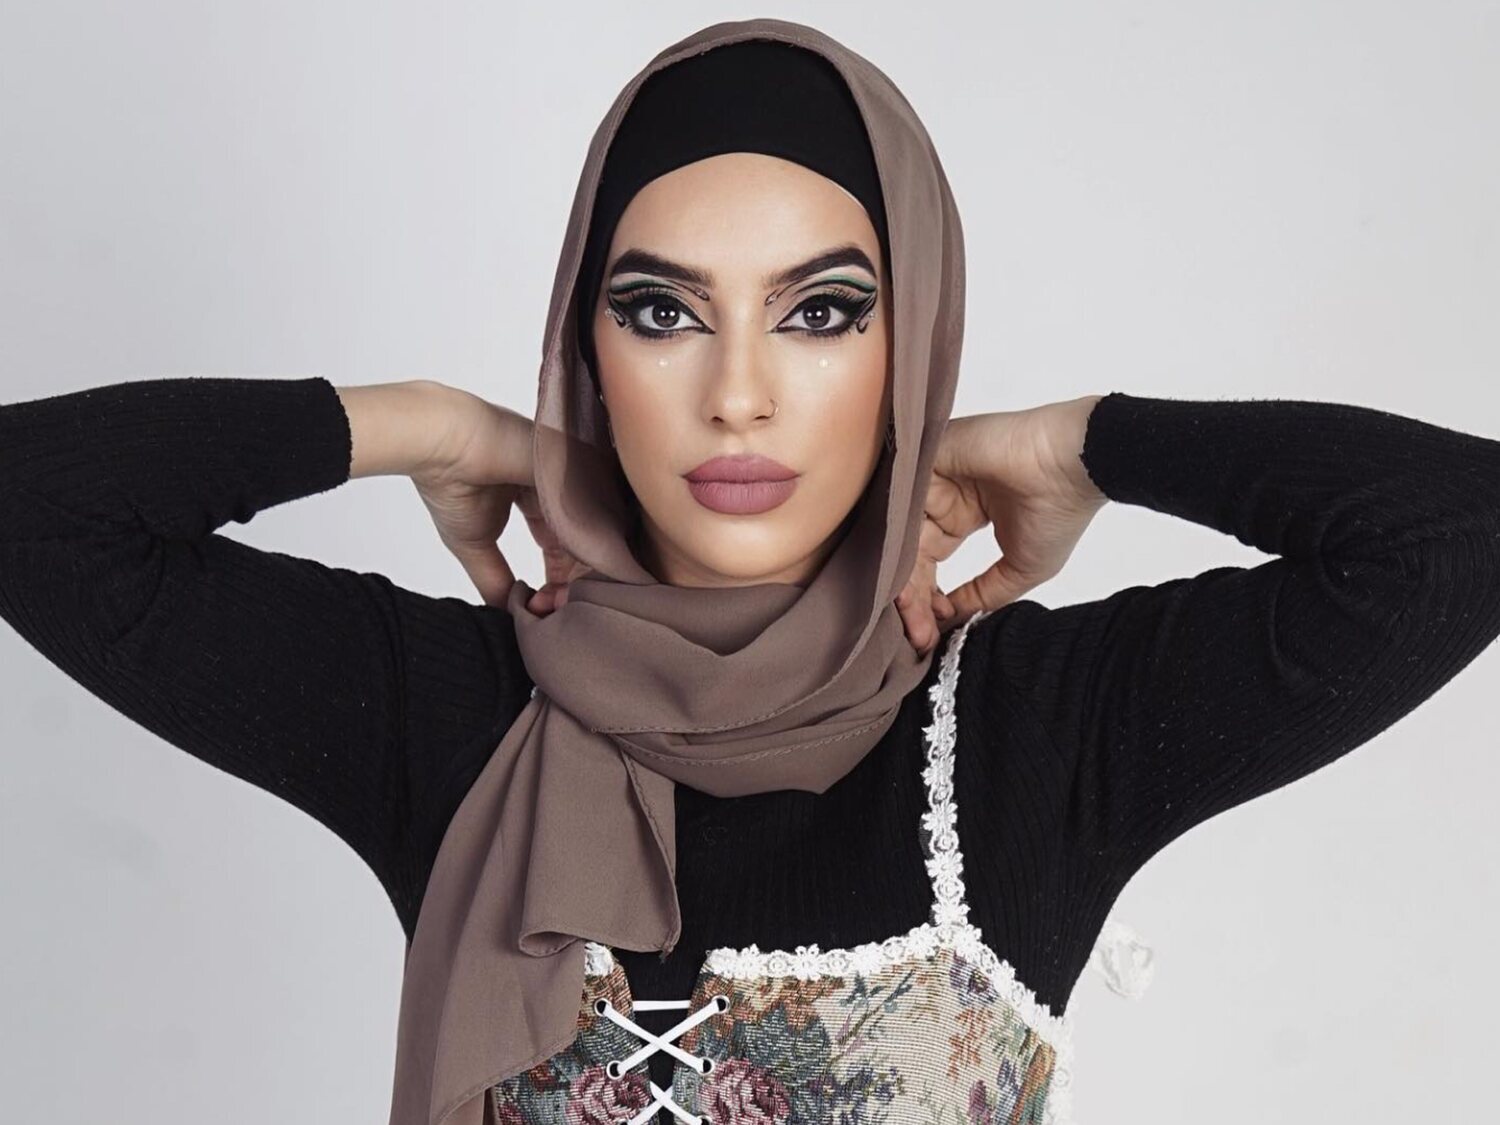 La rapera musulmana Miss Raisa es amenazada de muerte por radicales islamistas tras apoyar al colectivo LGTBI